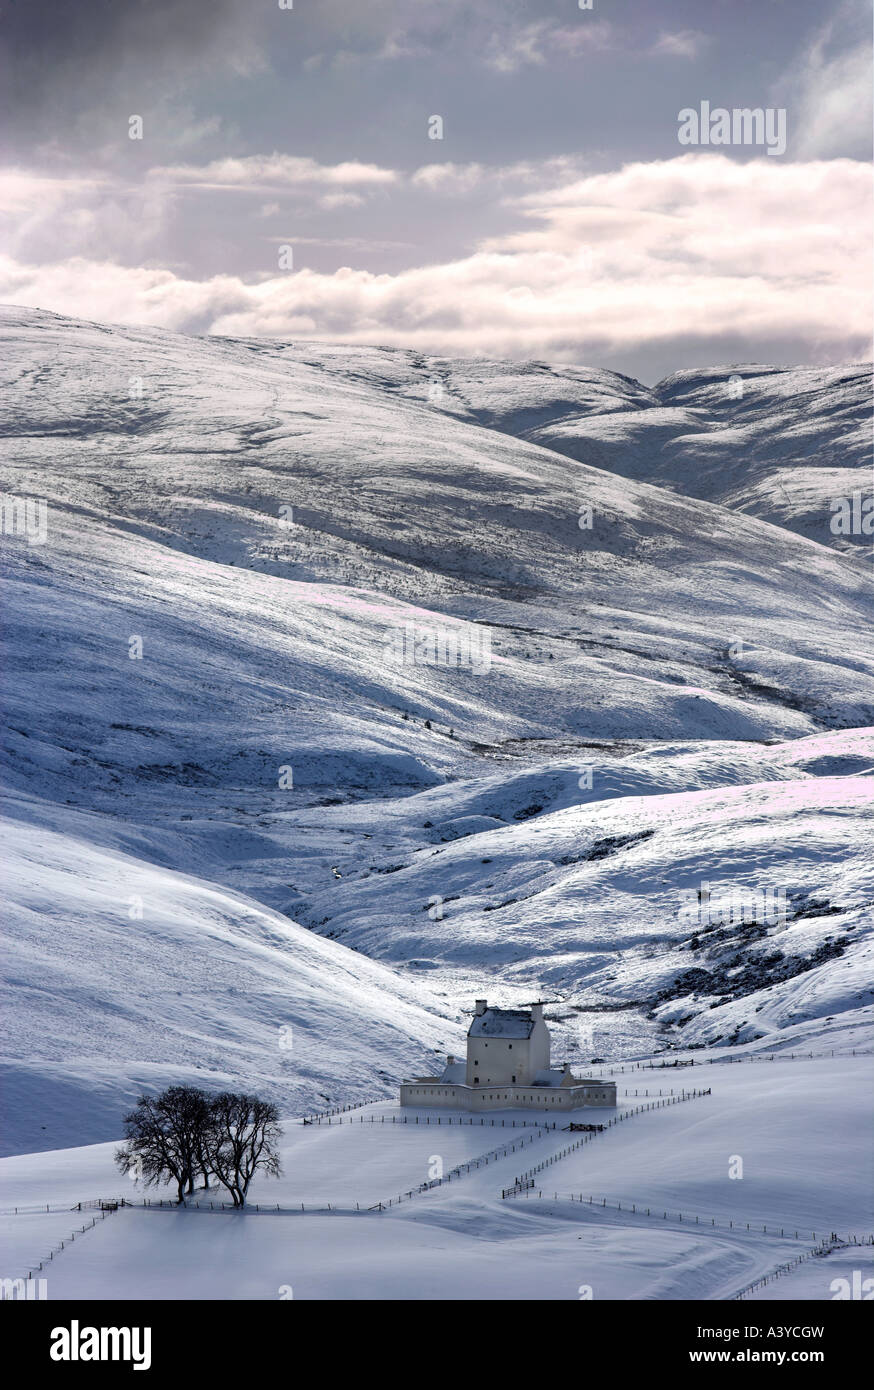 Imagen de formato vertical de Corgarff Castle, Escocia en invierno con nieve y moody cielo brillando en la dramática mountainscape Foto de stock